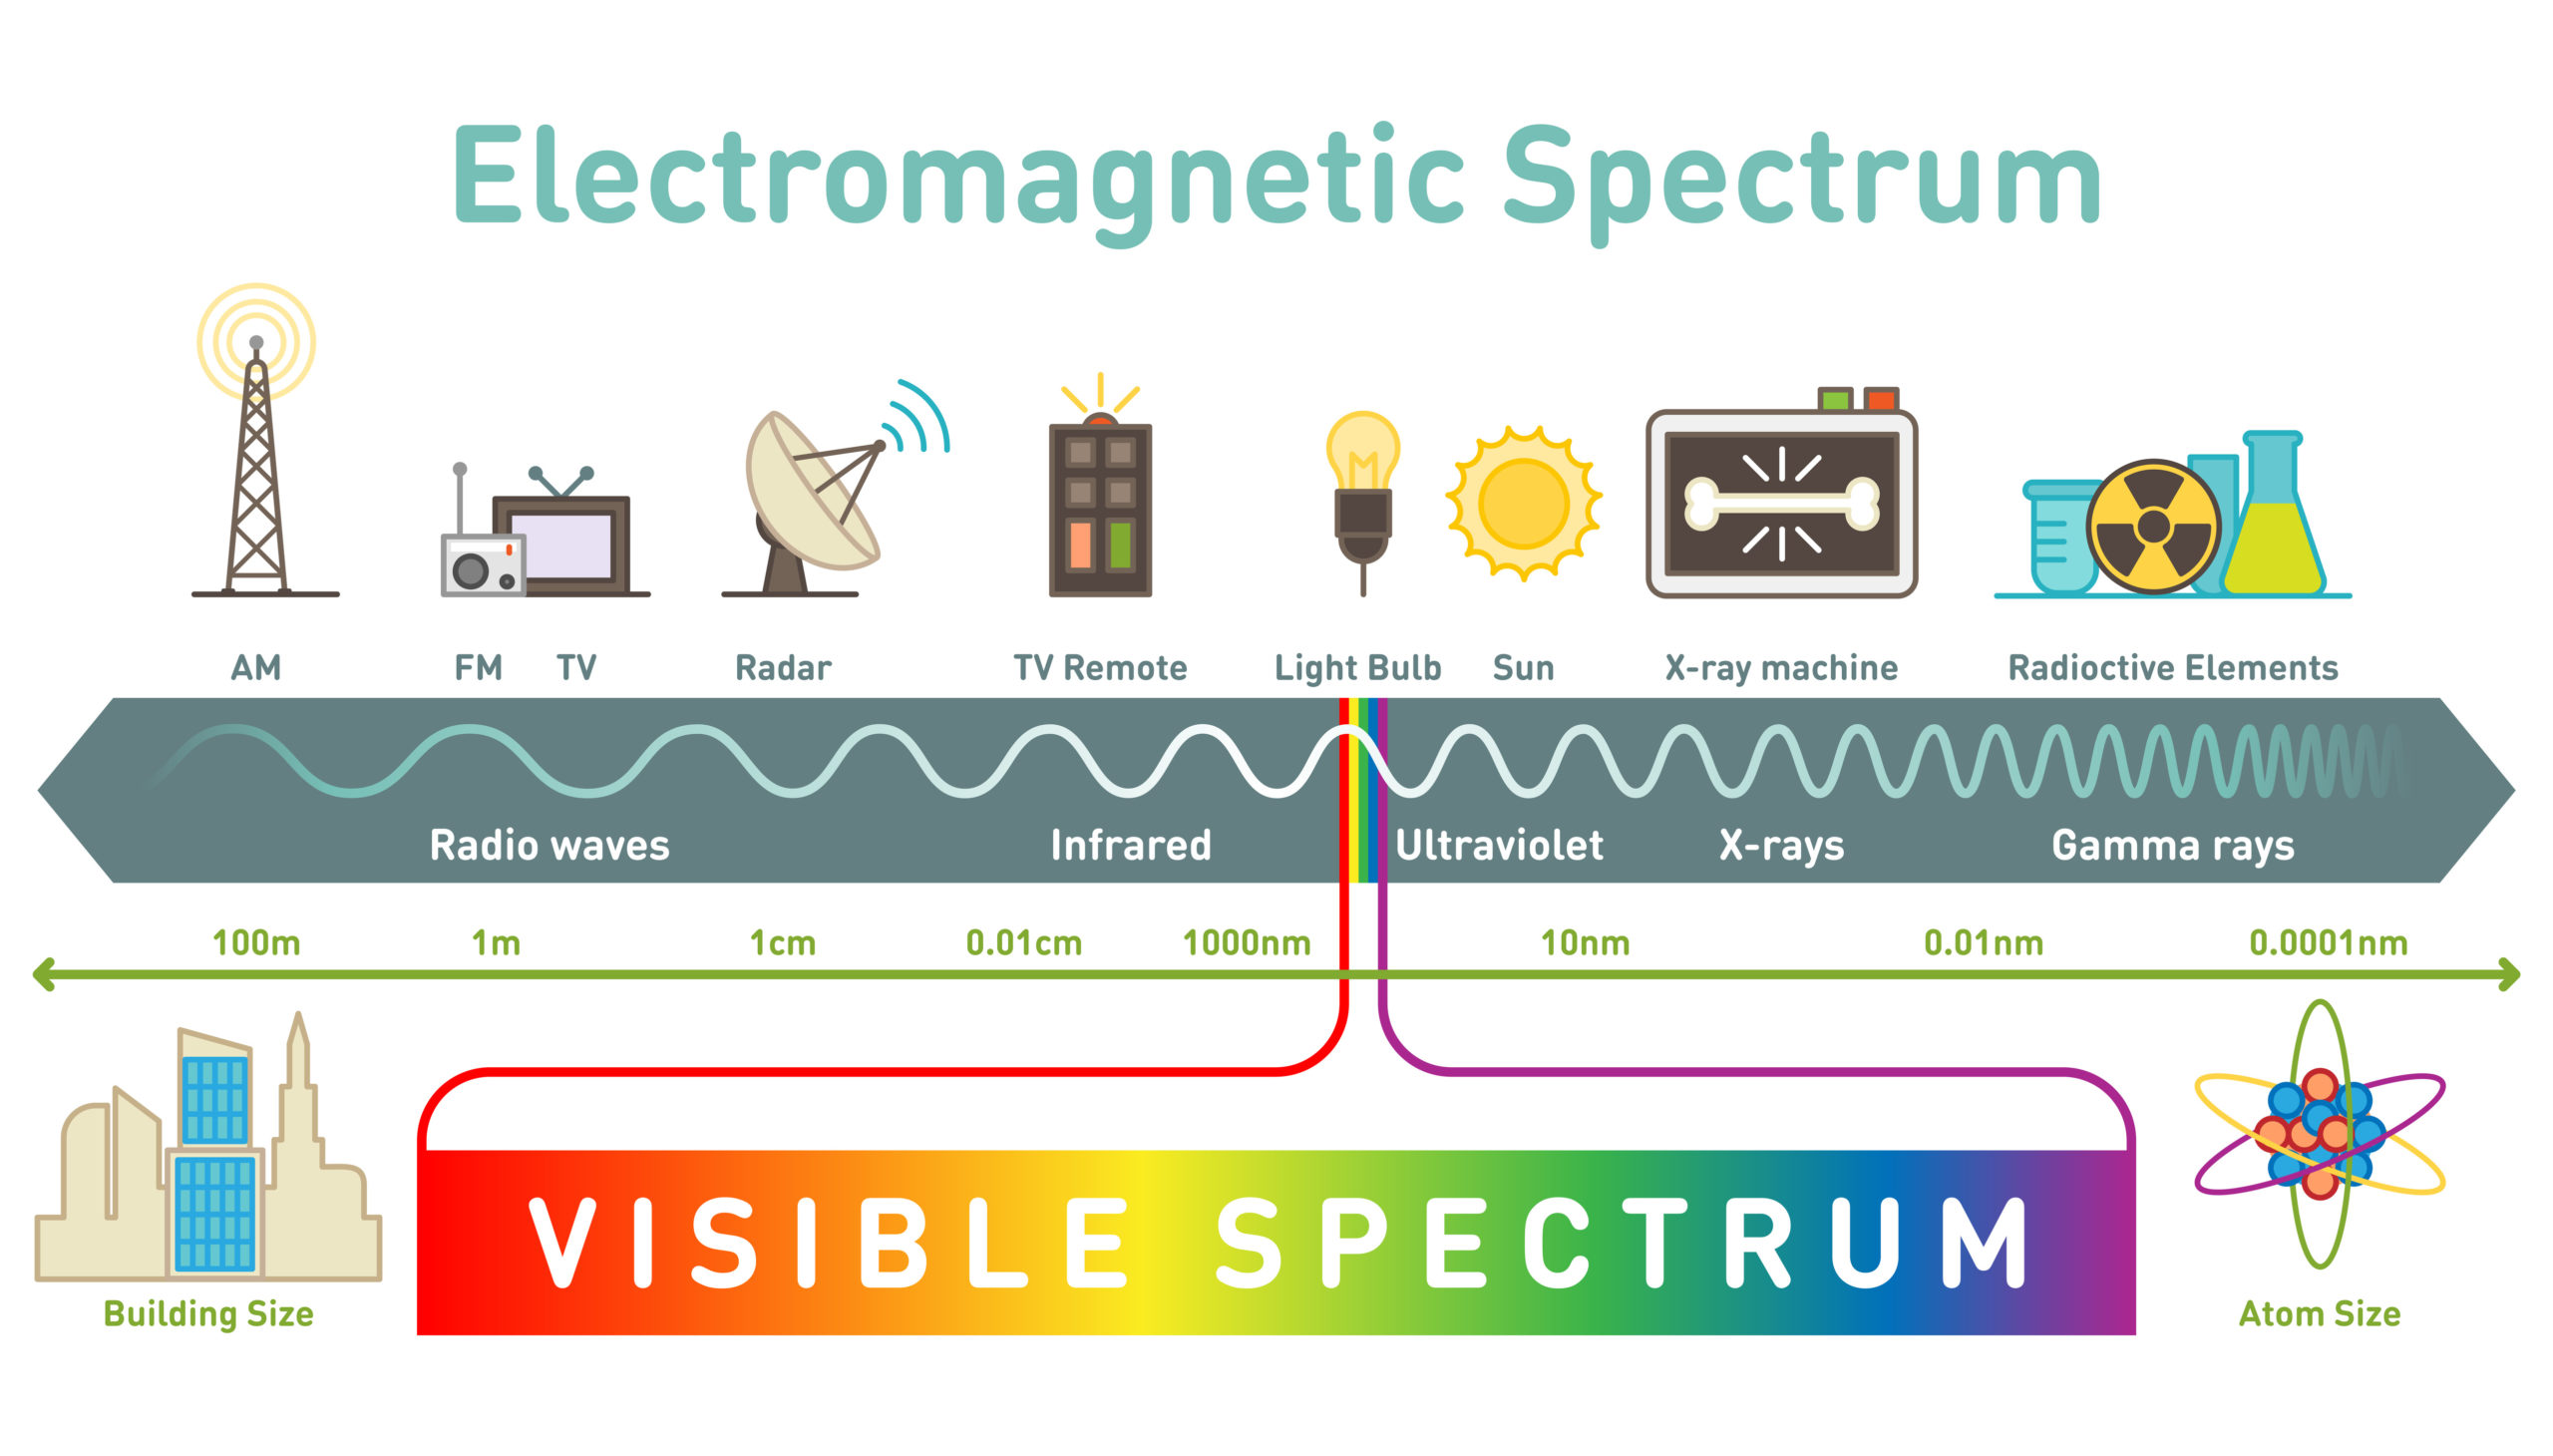 Druhy elektromagnetických záření seřazeny podle klesající vlnové délky